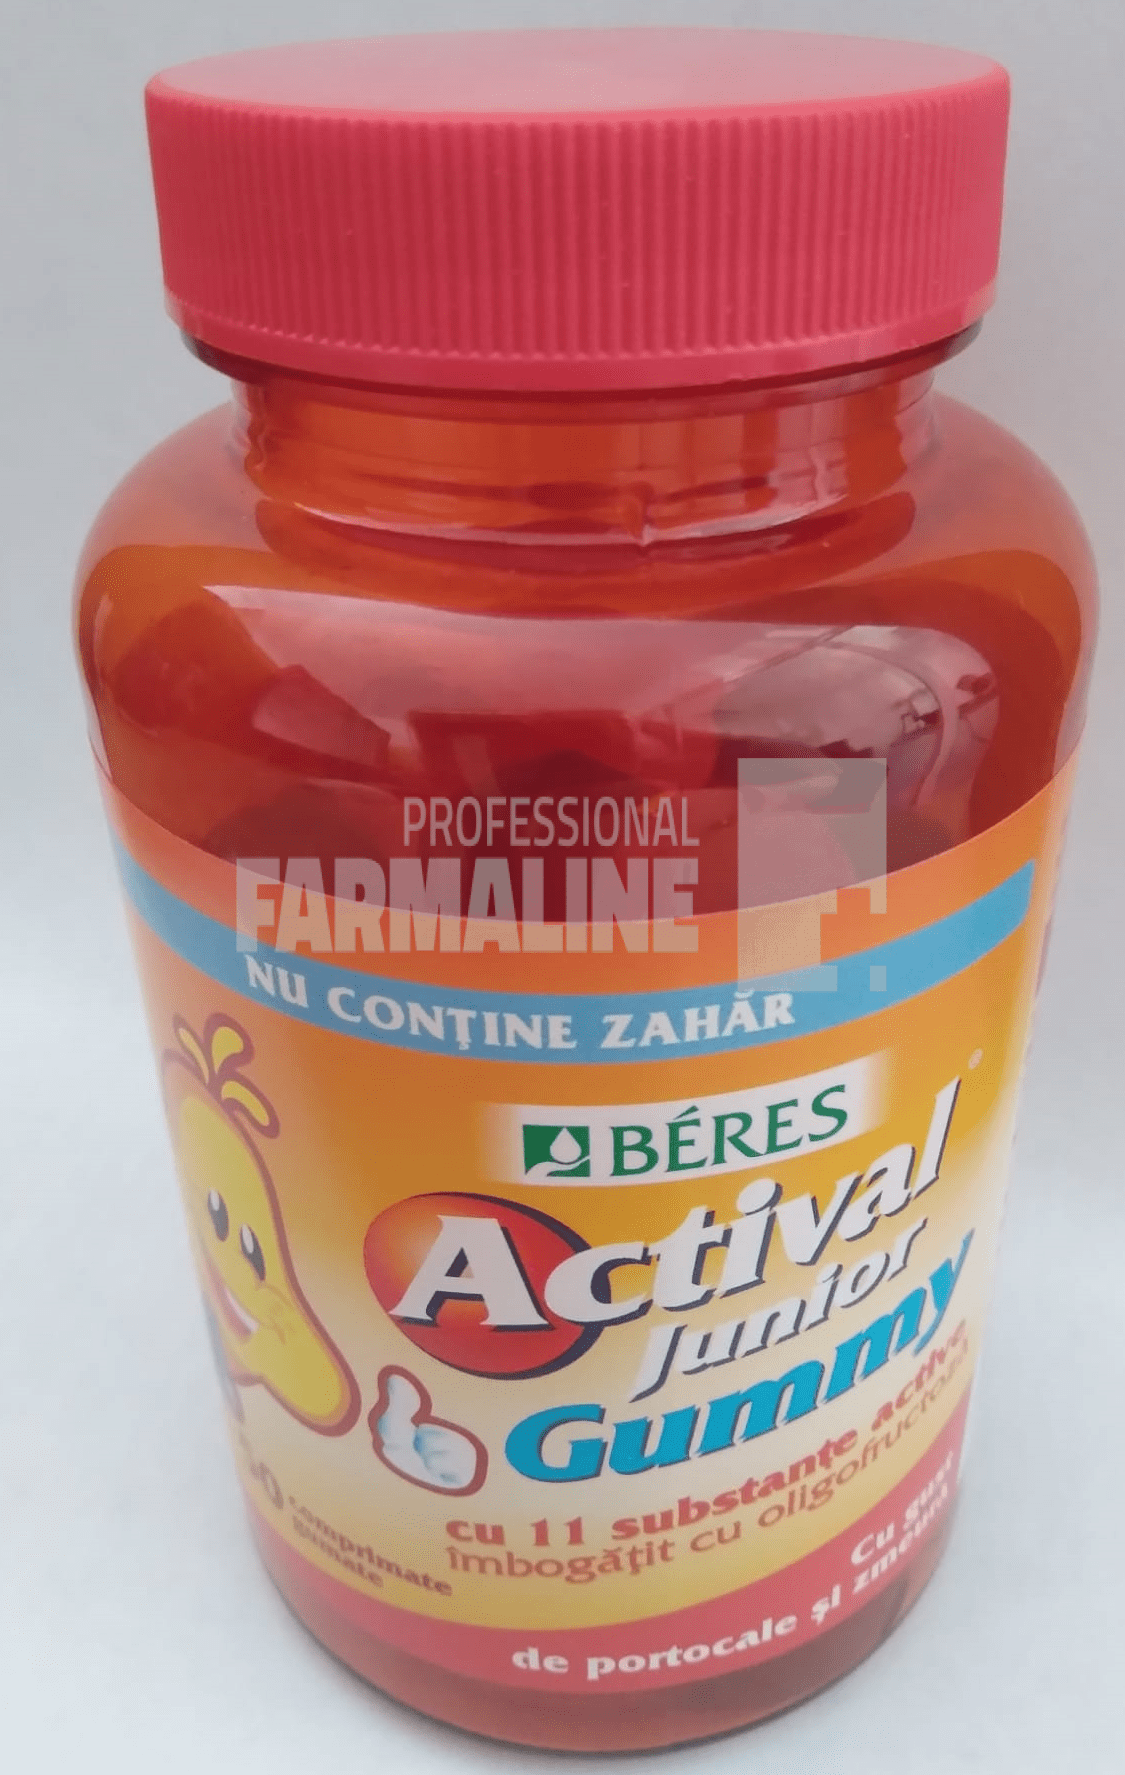 Beres Actival Junior Gummy fara zahar, gust portocale si zmeura 20 comprimate gumate